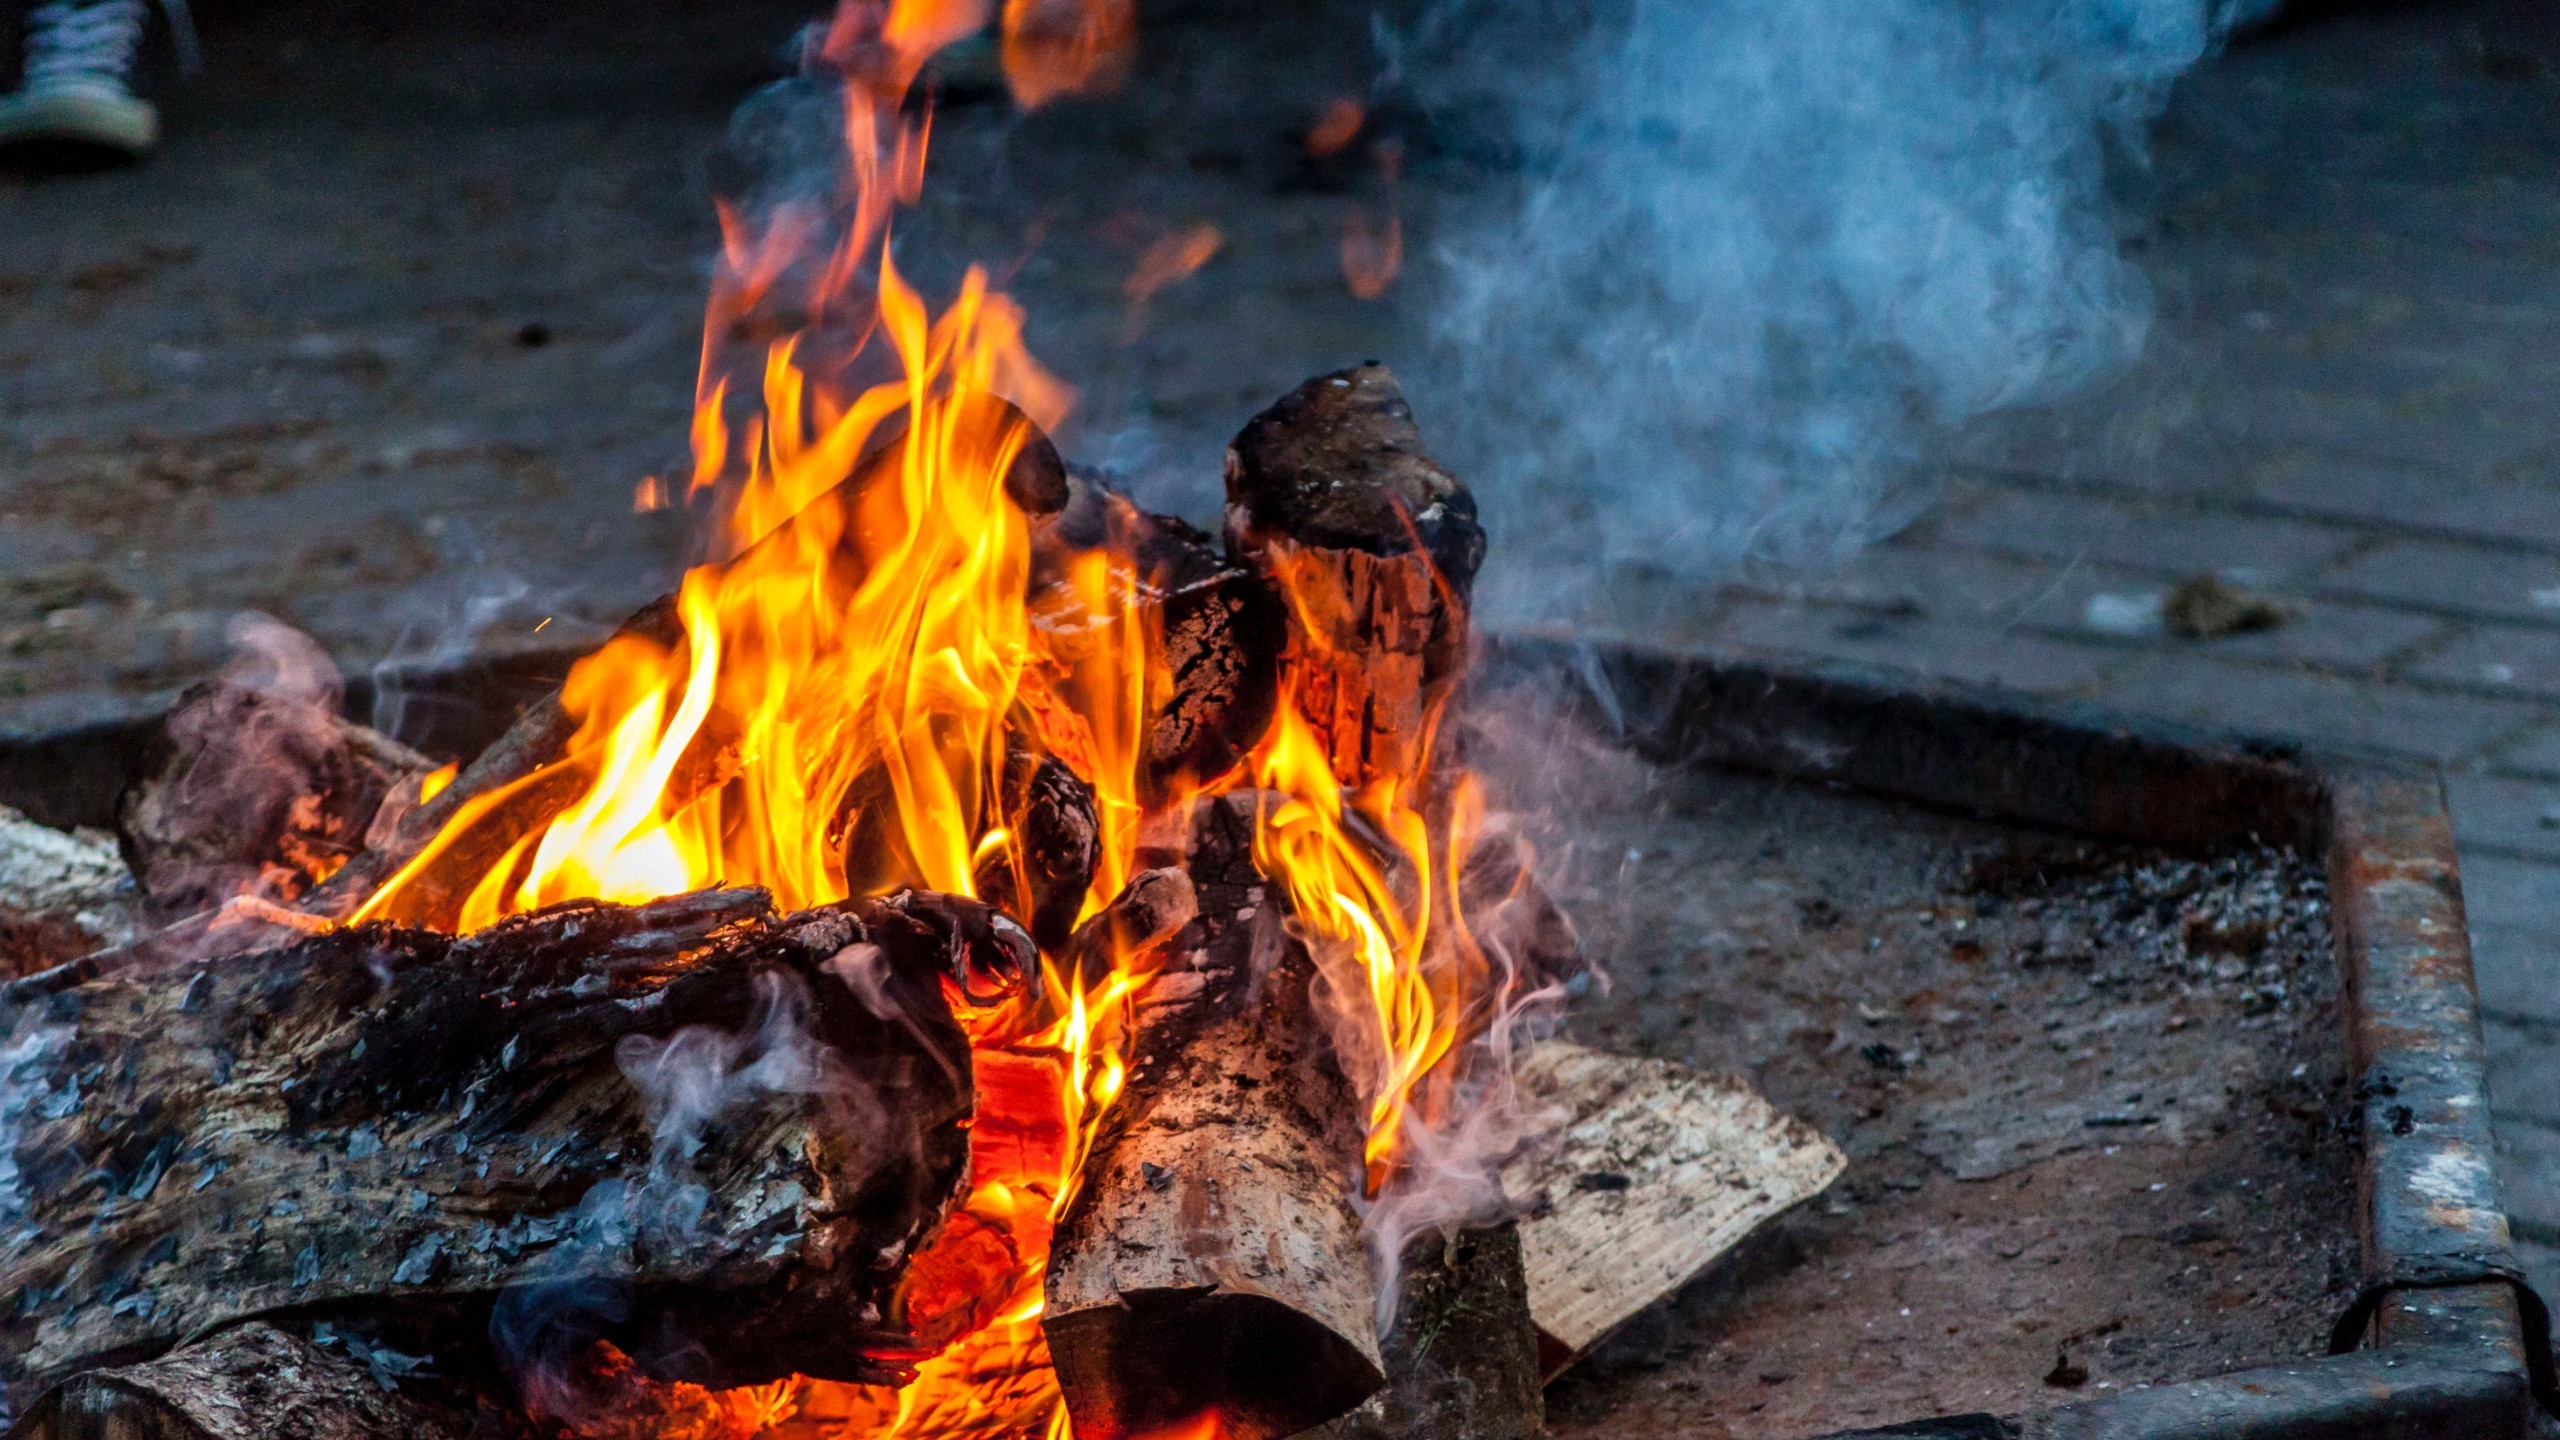 キャンプの醍醐味 焚き火で冬キャンプをもっと楽しもう Campifyマガジン